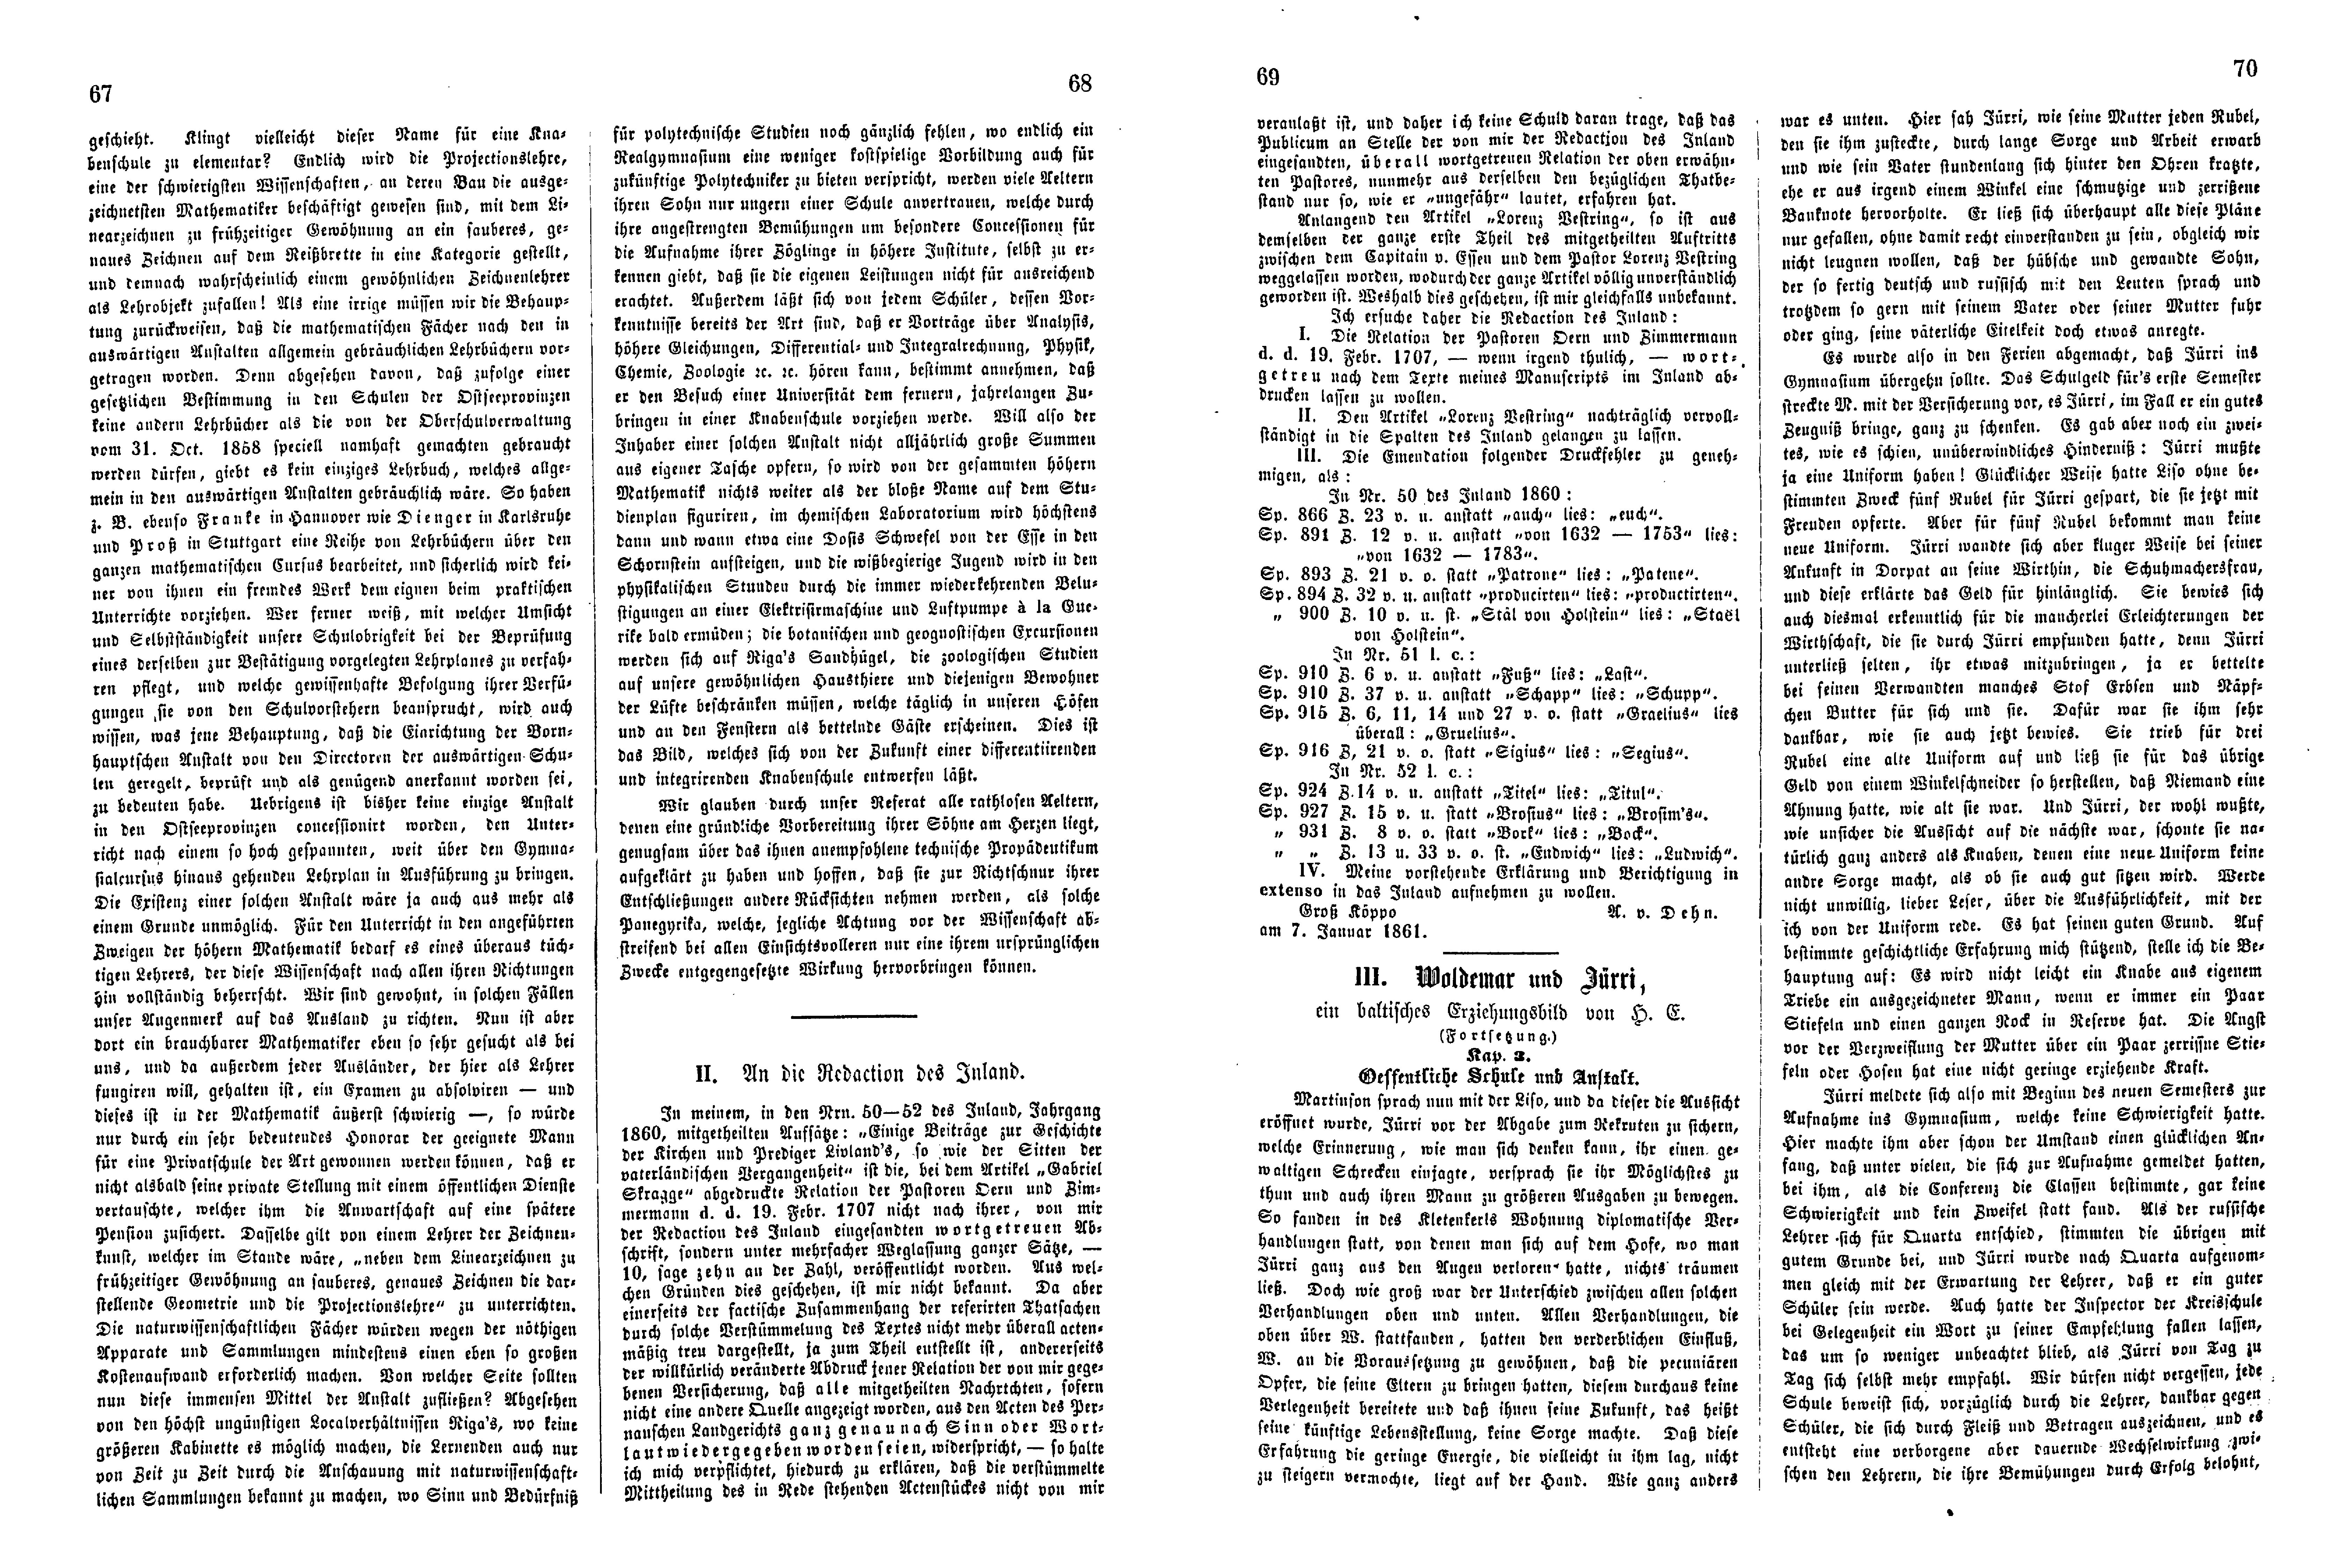 Das Inland [26] (1861) | 21. (67-70) Основной текст